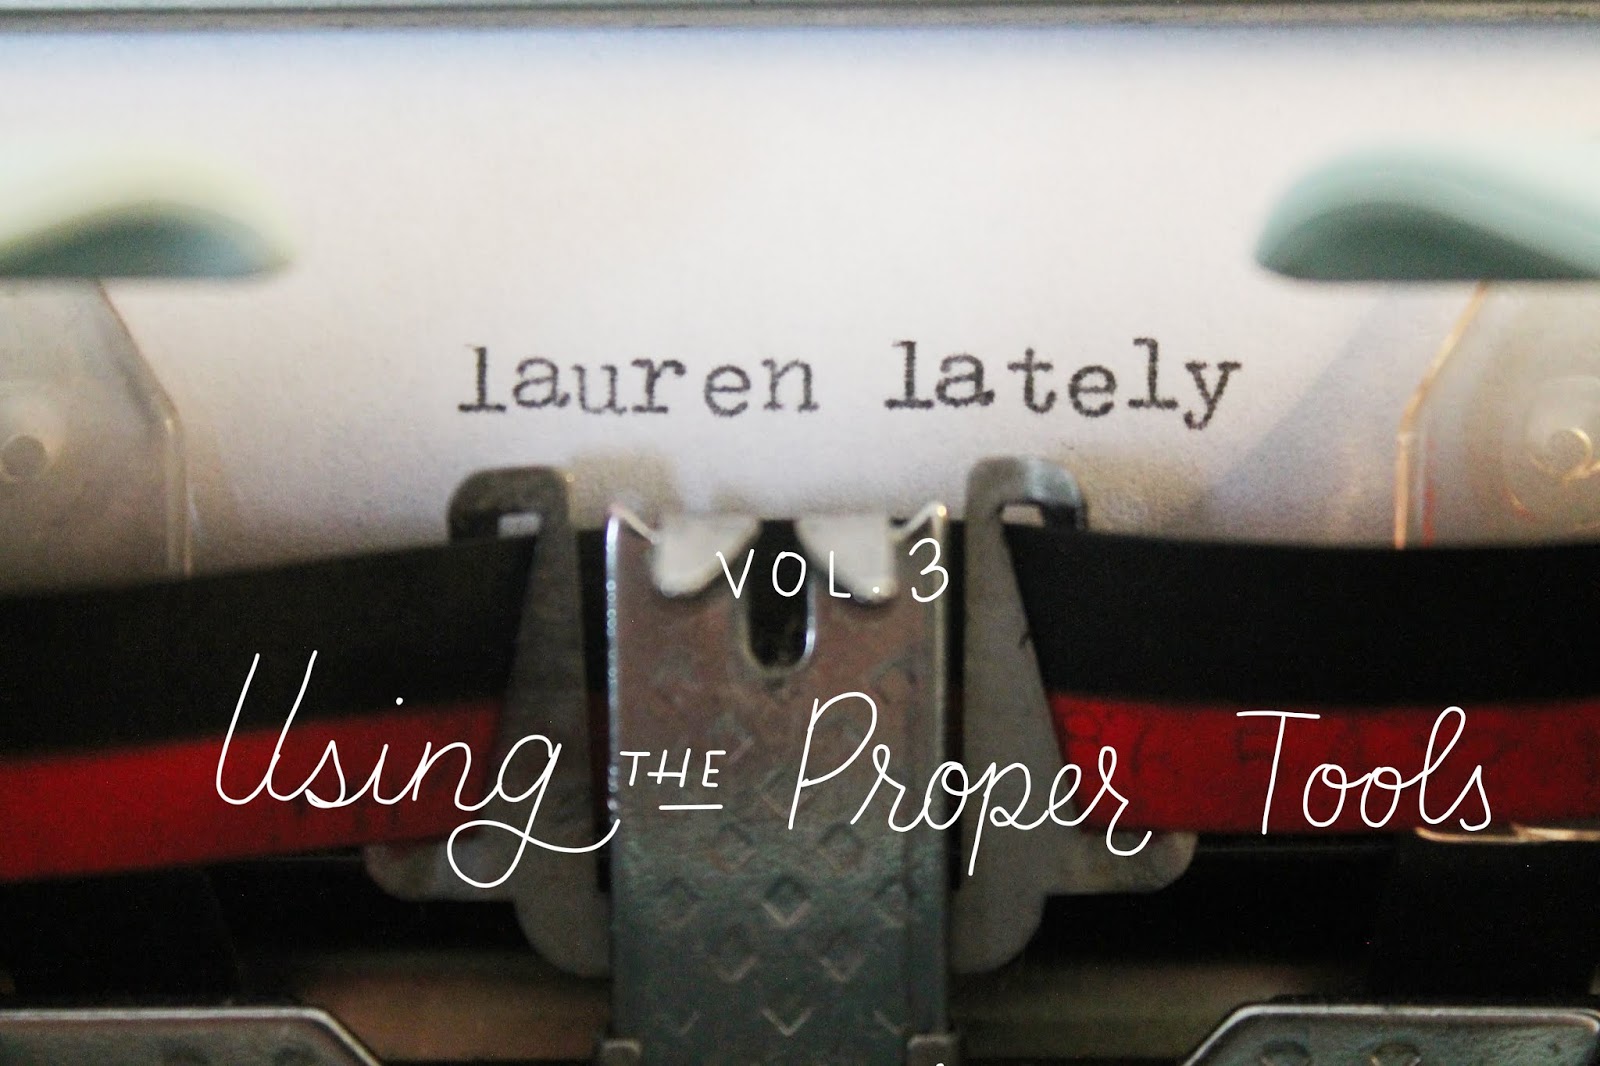 Lauren Lately vol 3